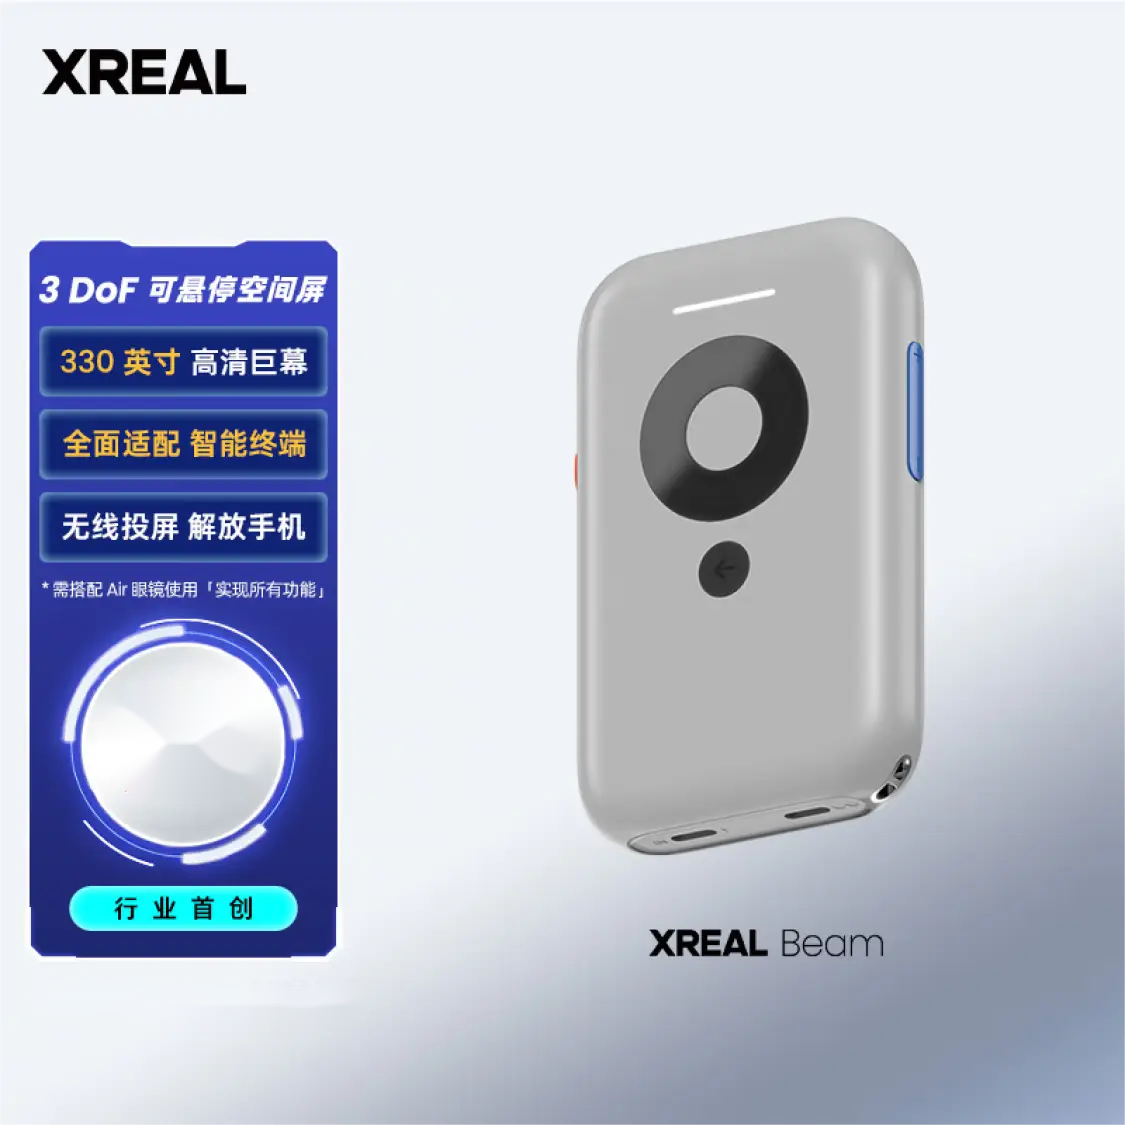 XREAL Beam スクリーン投影ボックスは、Nreal Air シリーズ専用スマート端末と完全互換性があります